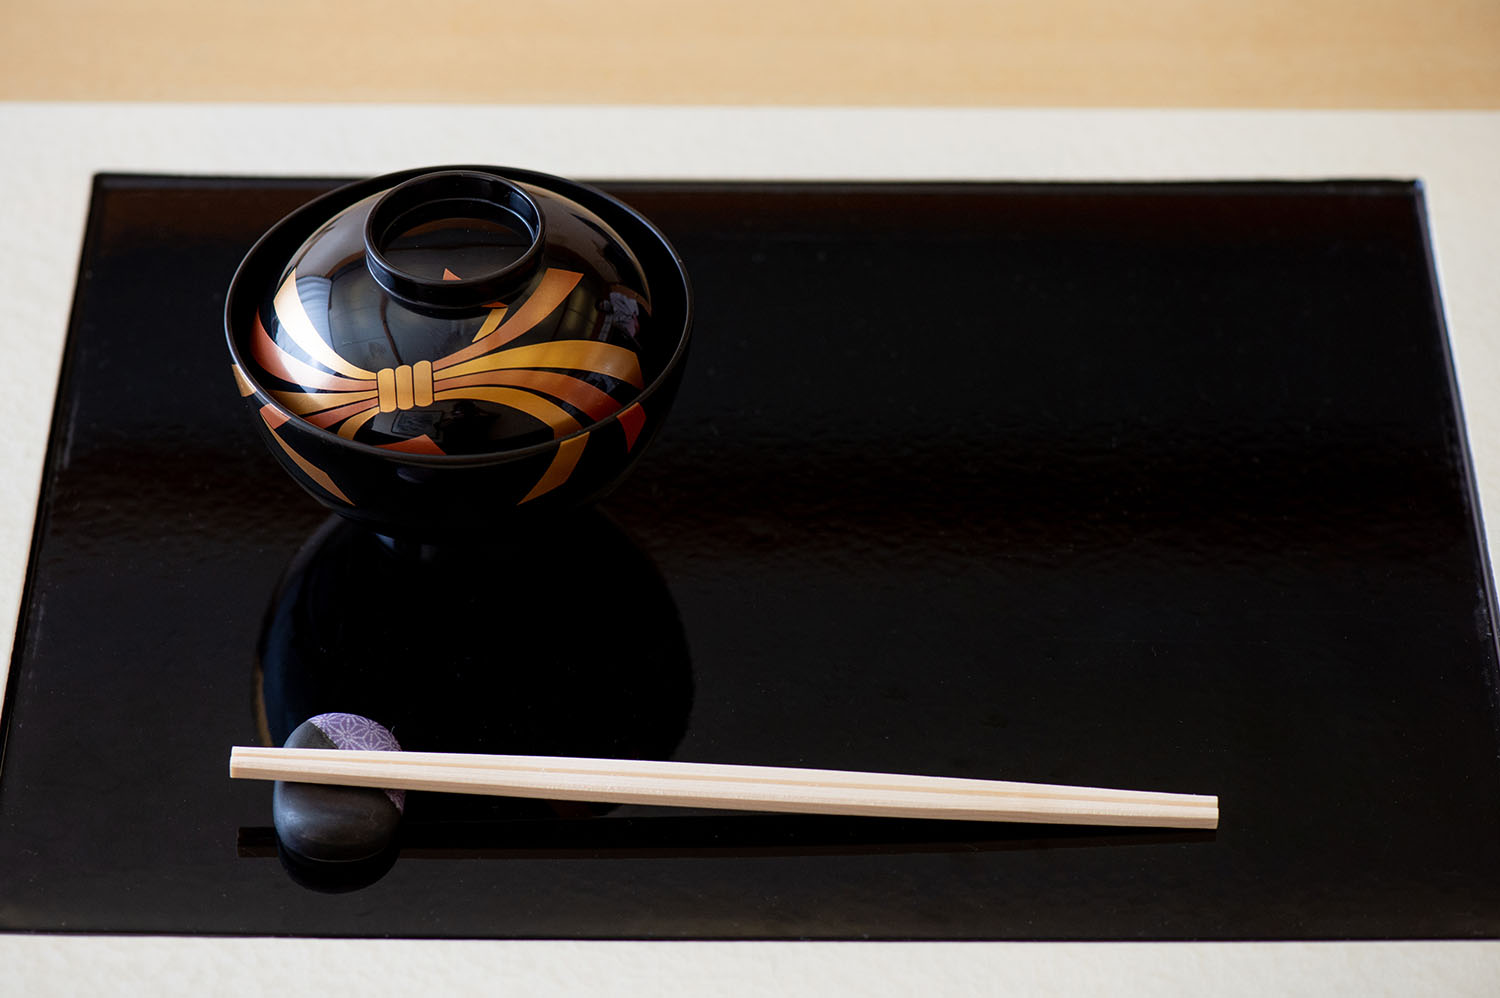 日式風格的筷子使用方式｜享用日本料理時的筷子使用禮儀與做法